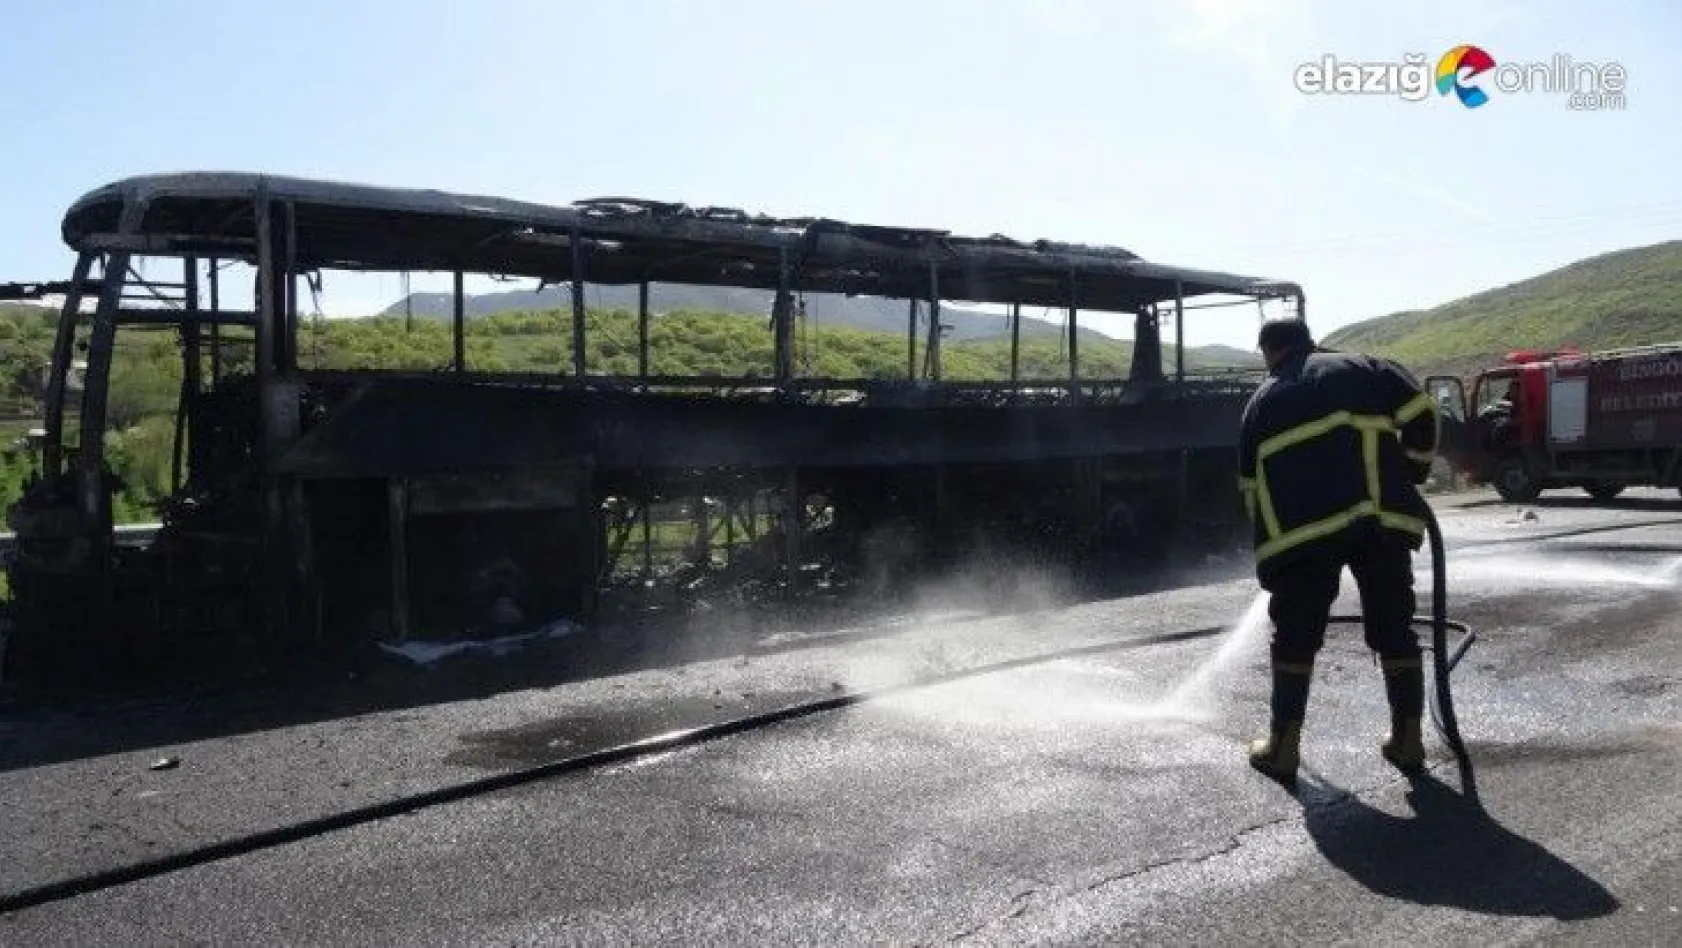 46 yolcusu bulunan otobüs alev alev yandı